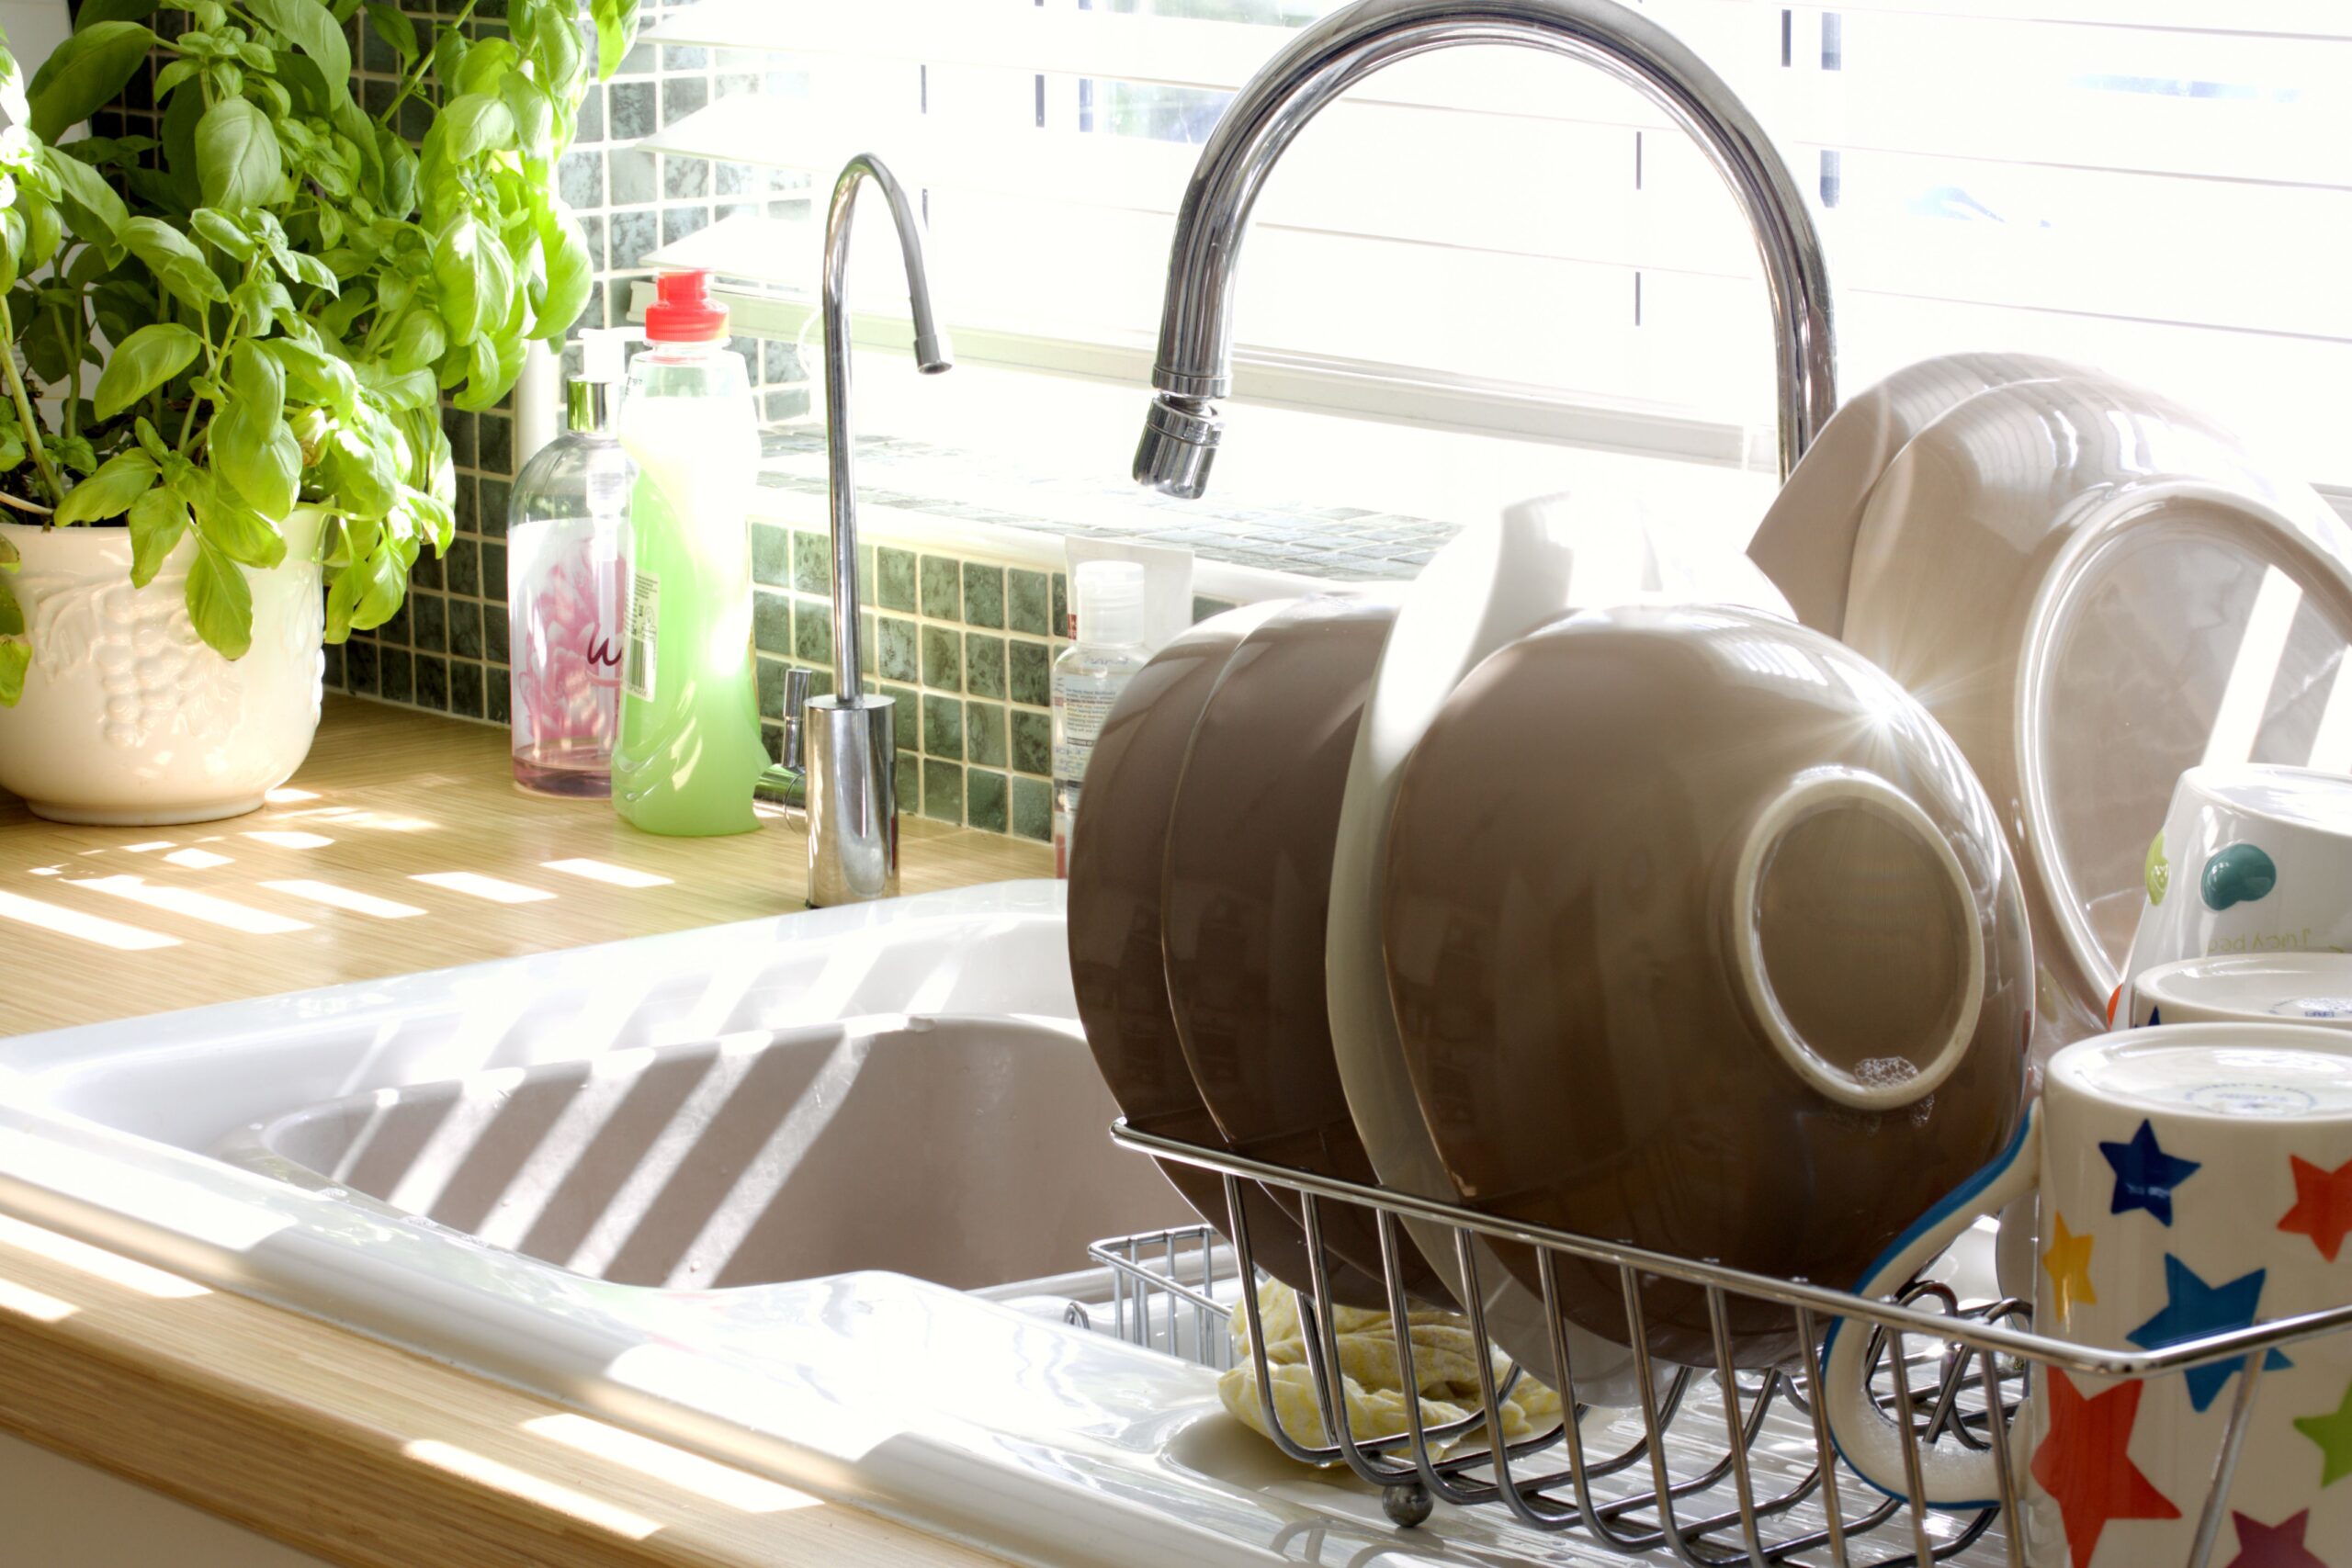 Perché lavare i piatti a mano è pericoloso?